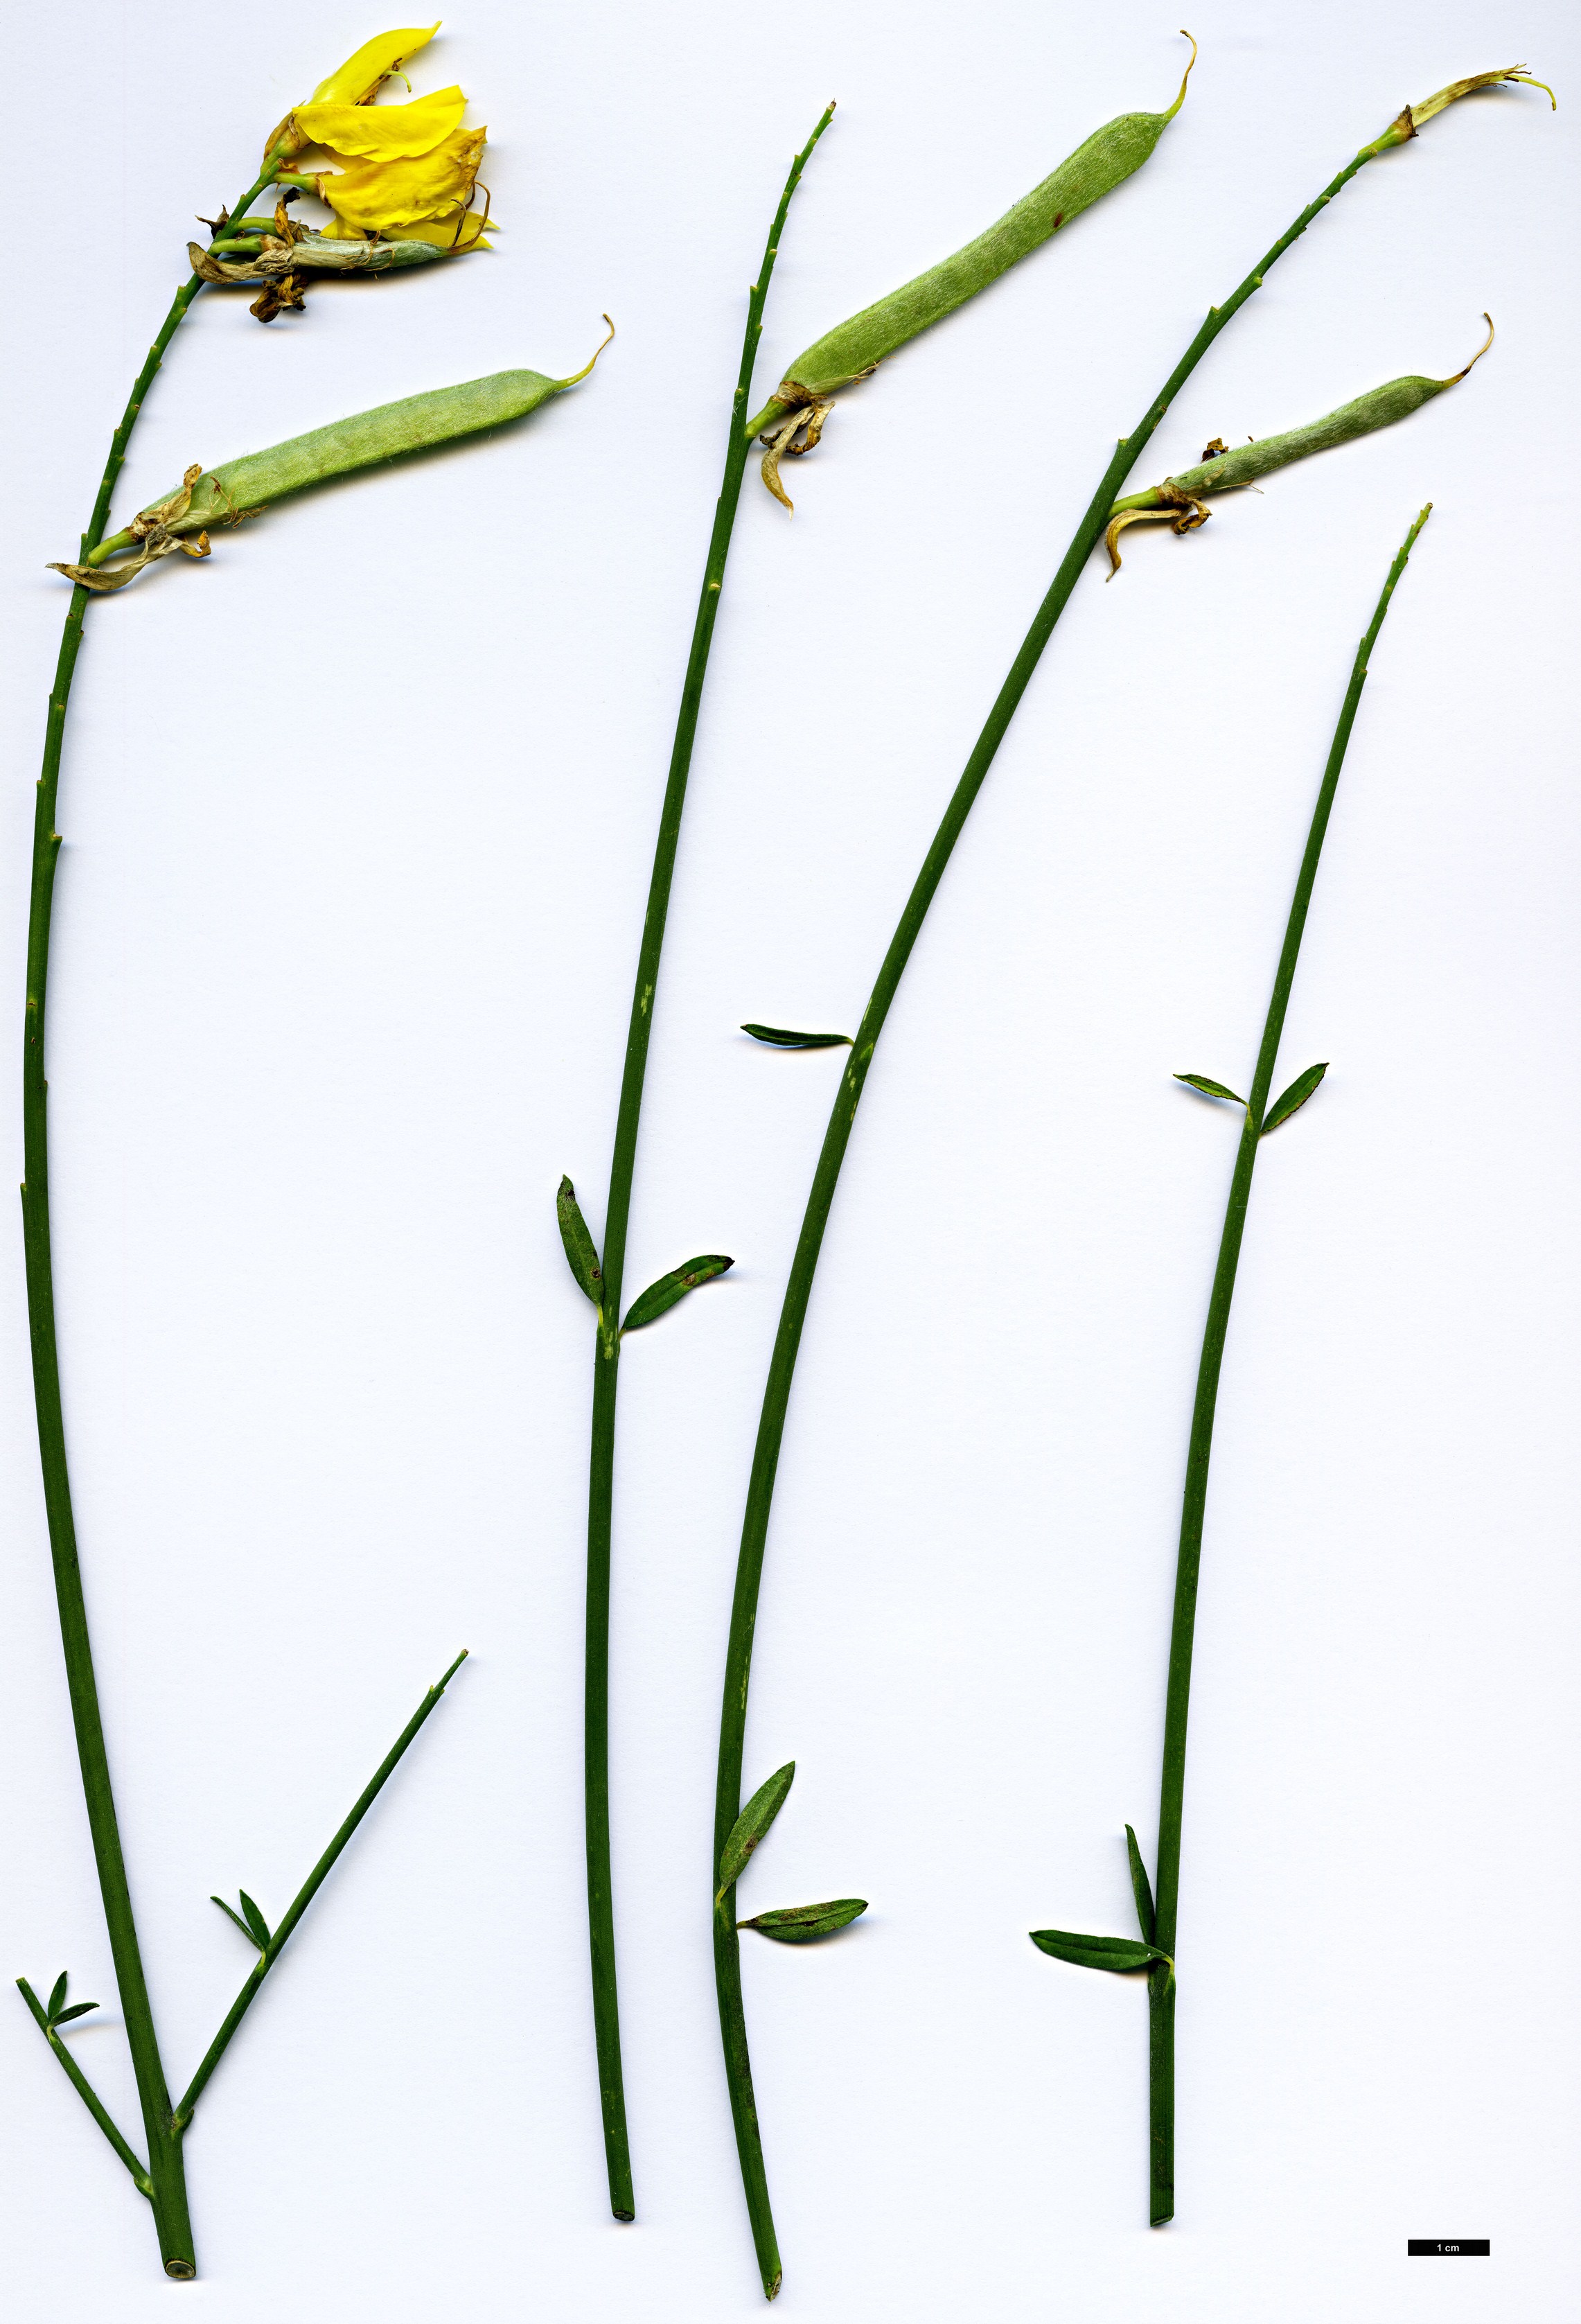 High resolution image: Family: Fabaceae - Genus: Spartium - Taxon: junceum